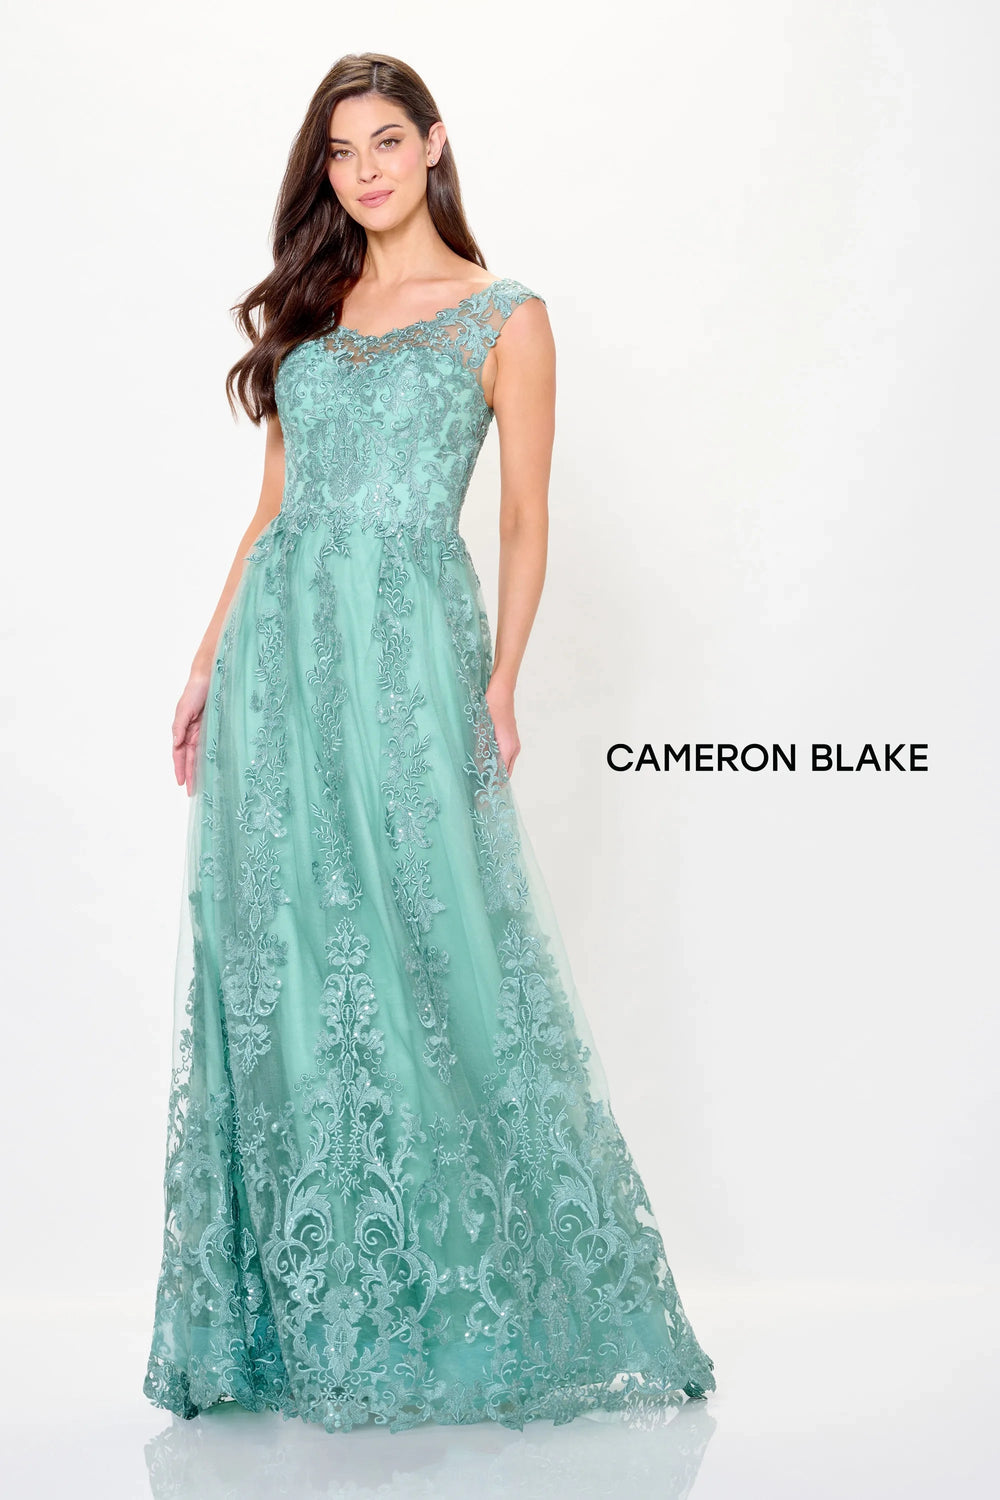 Mon Cheri Cameron Blake Dress Mon Cheri Cameron Blake CB3240 Dress